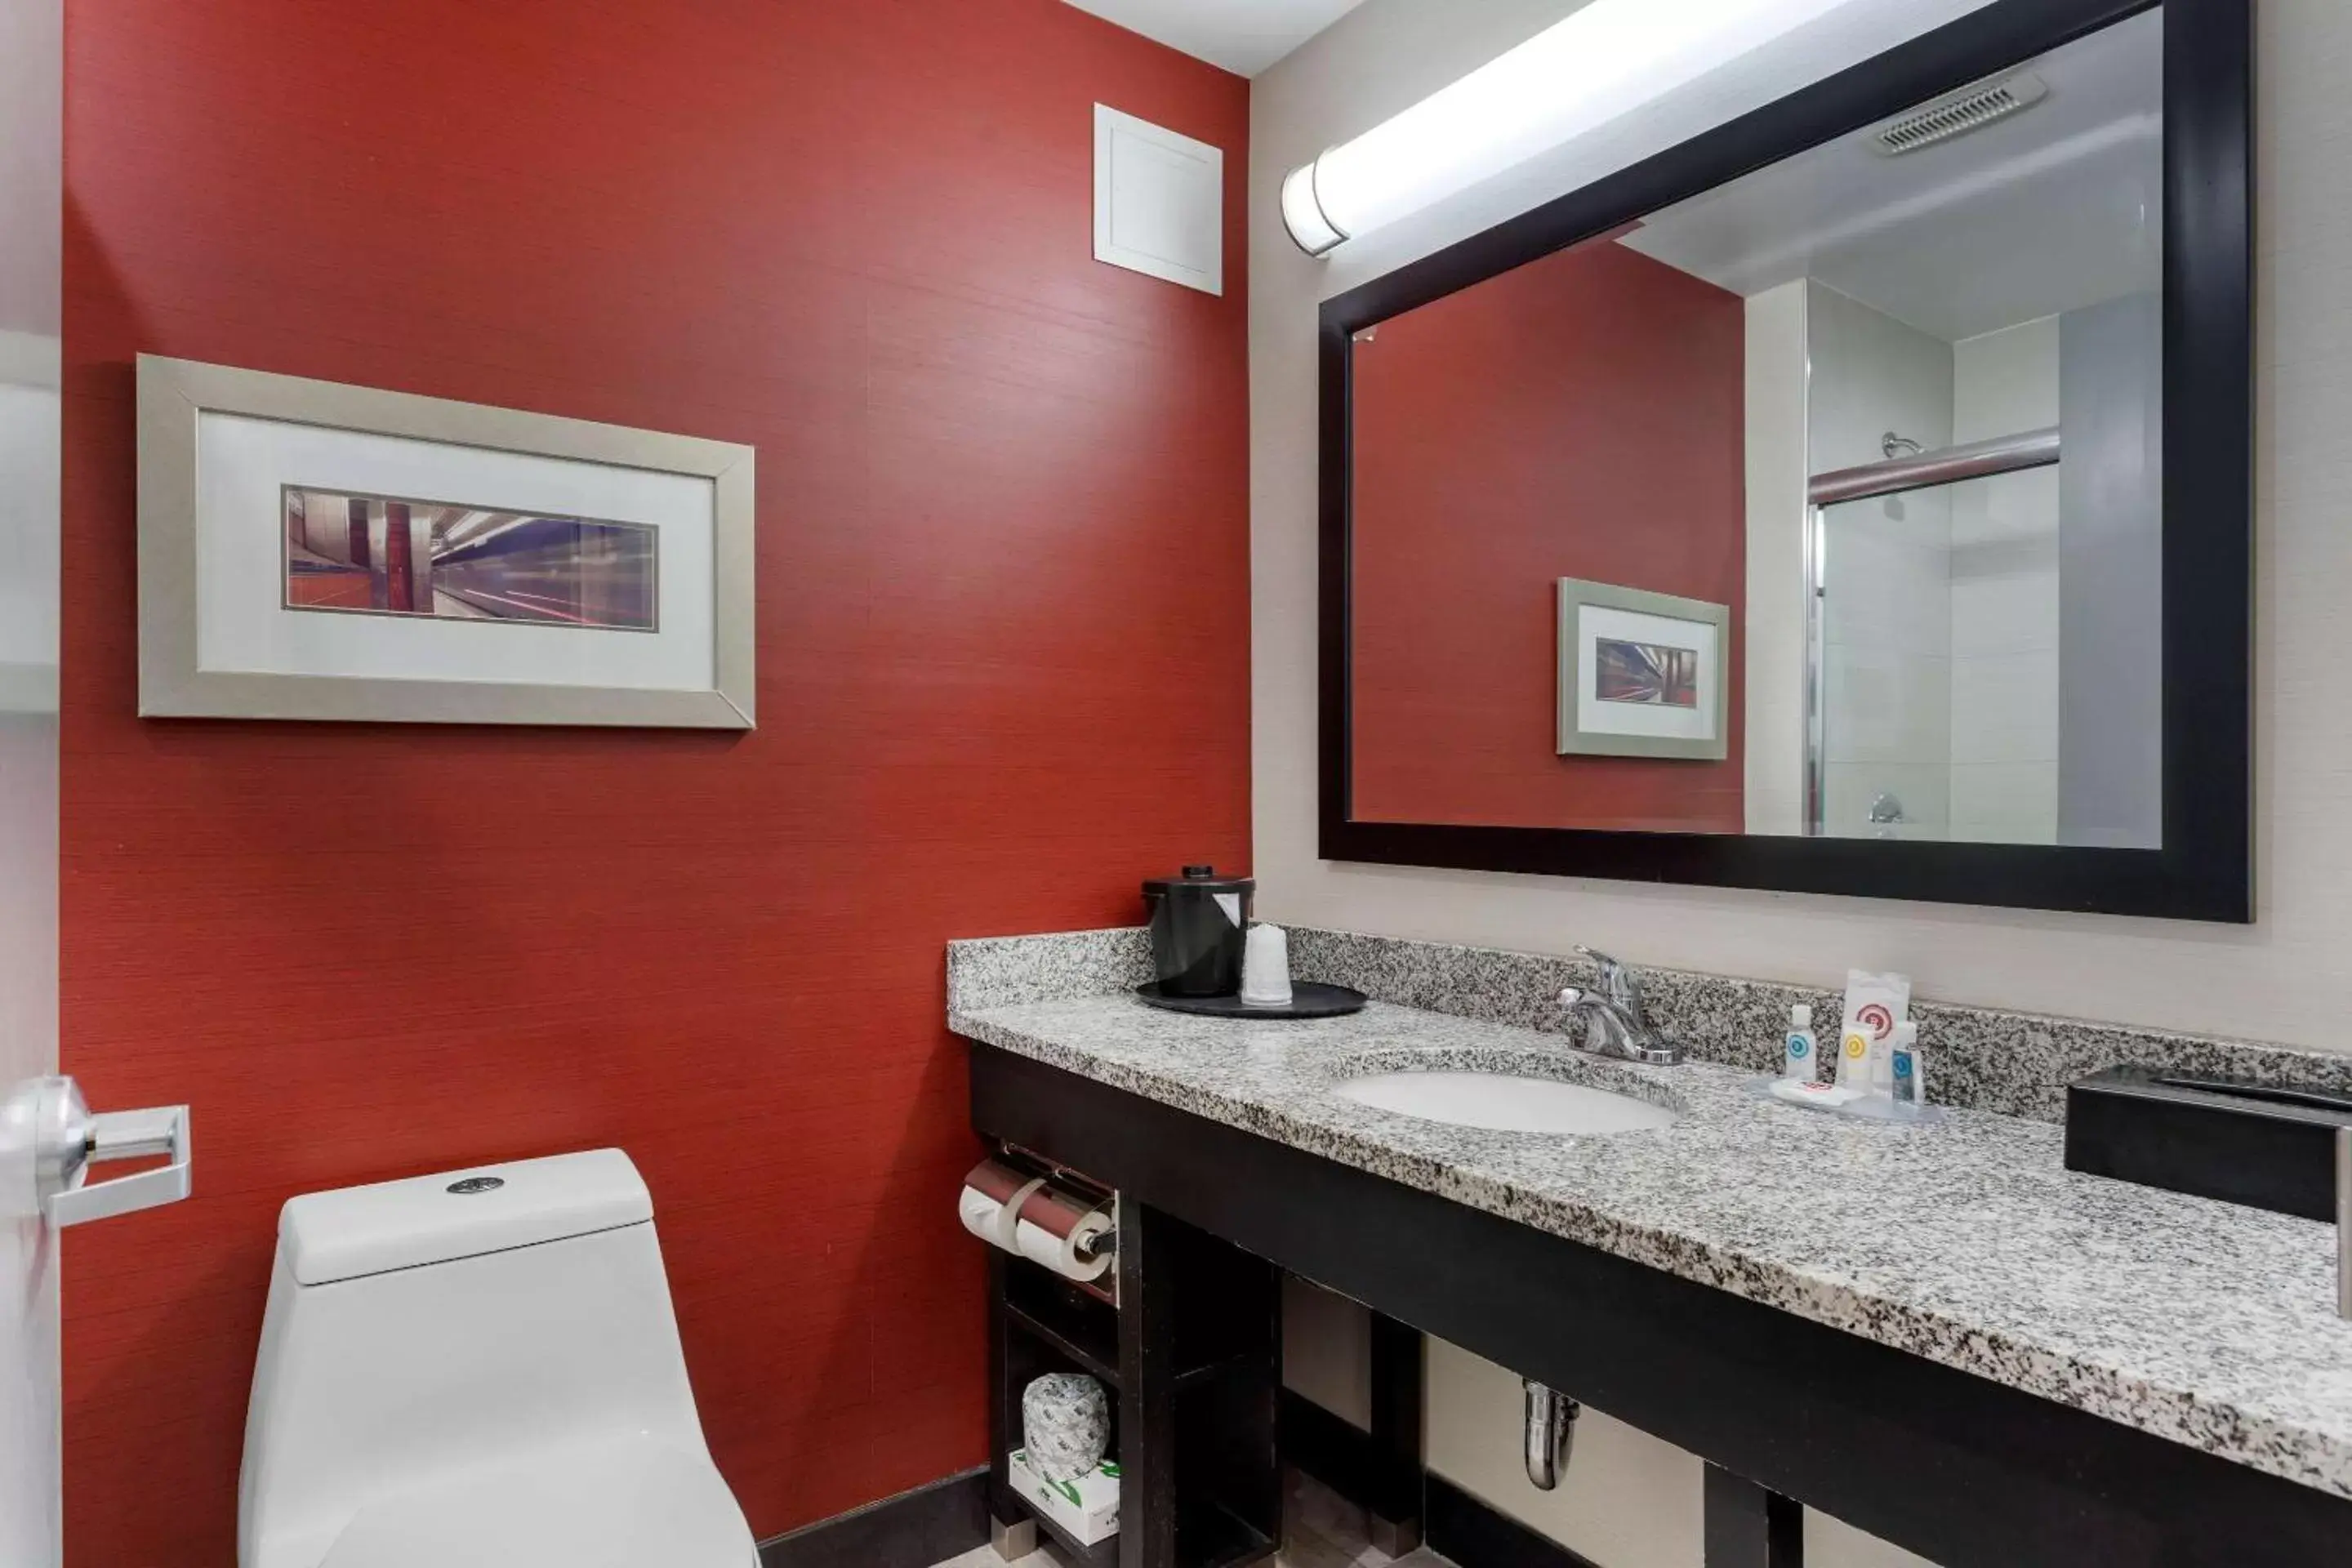 Bathroom in Comfort Inn & Suites near Stadium